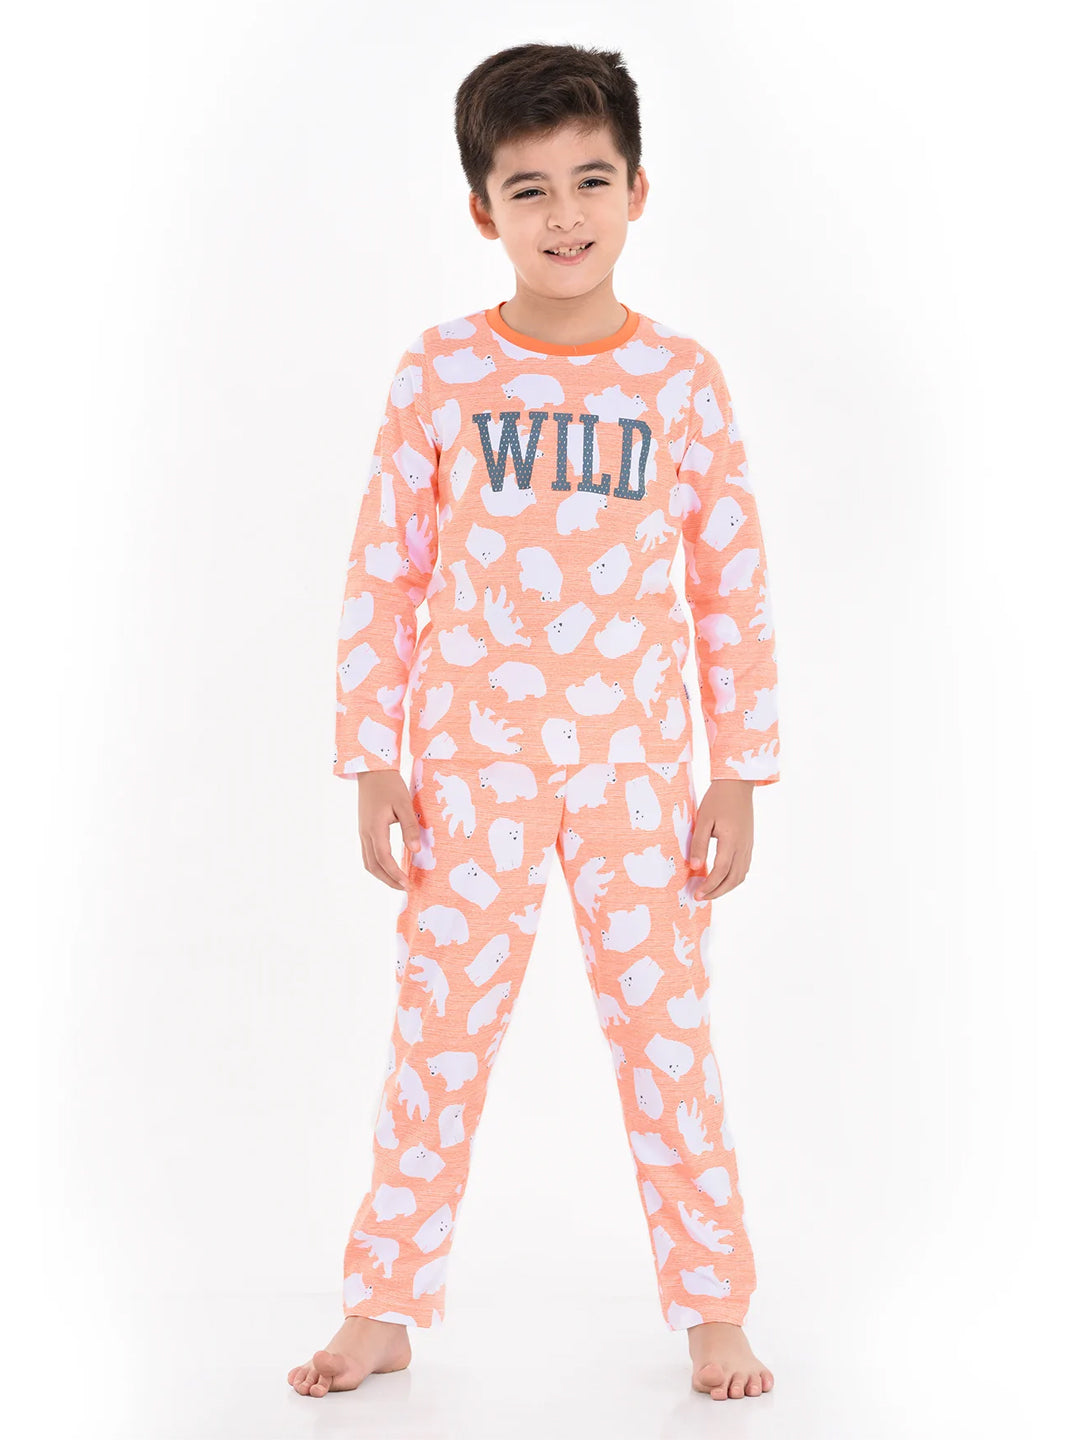 Wild pajamas